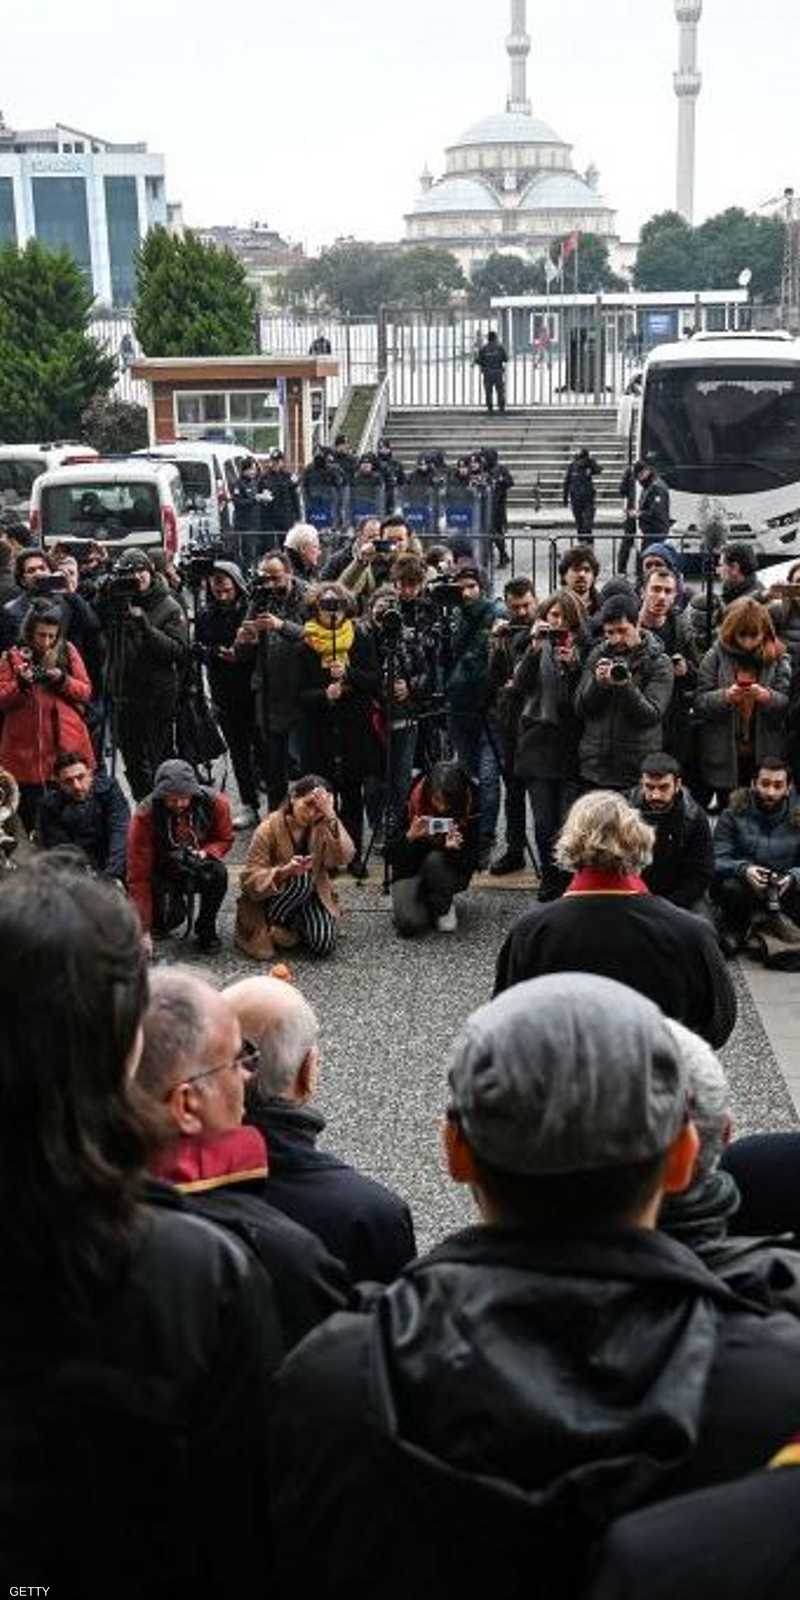 احتجاج في إسطنبول تنديدا بسجن صحفيين ينتقدون أردوغان 1-1229483.jpg